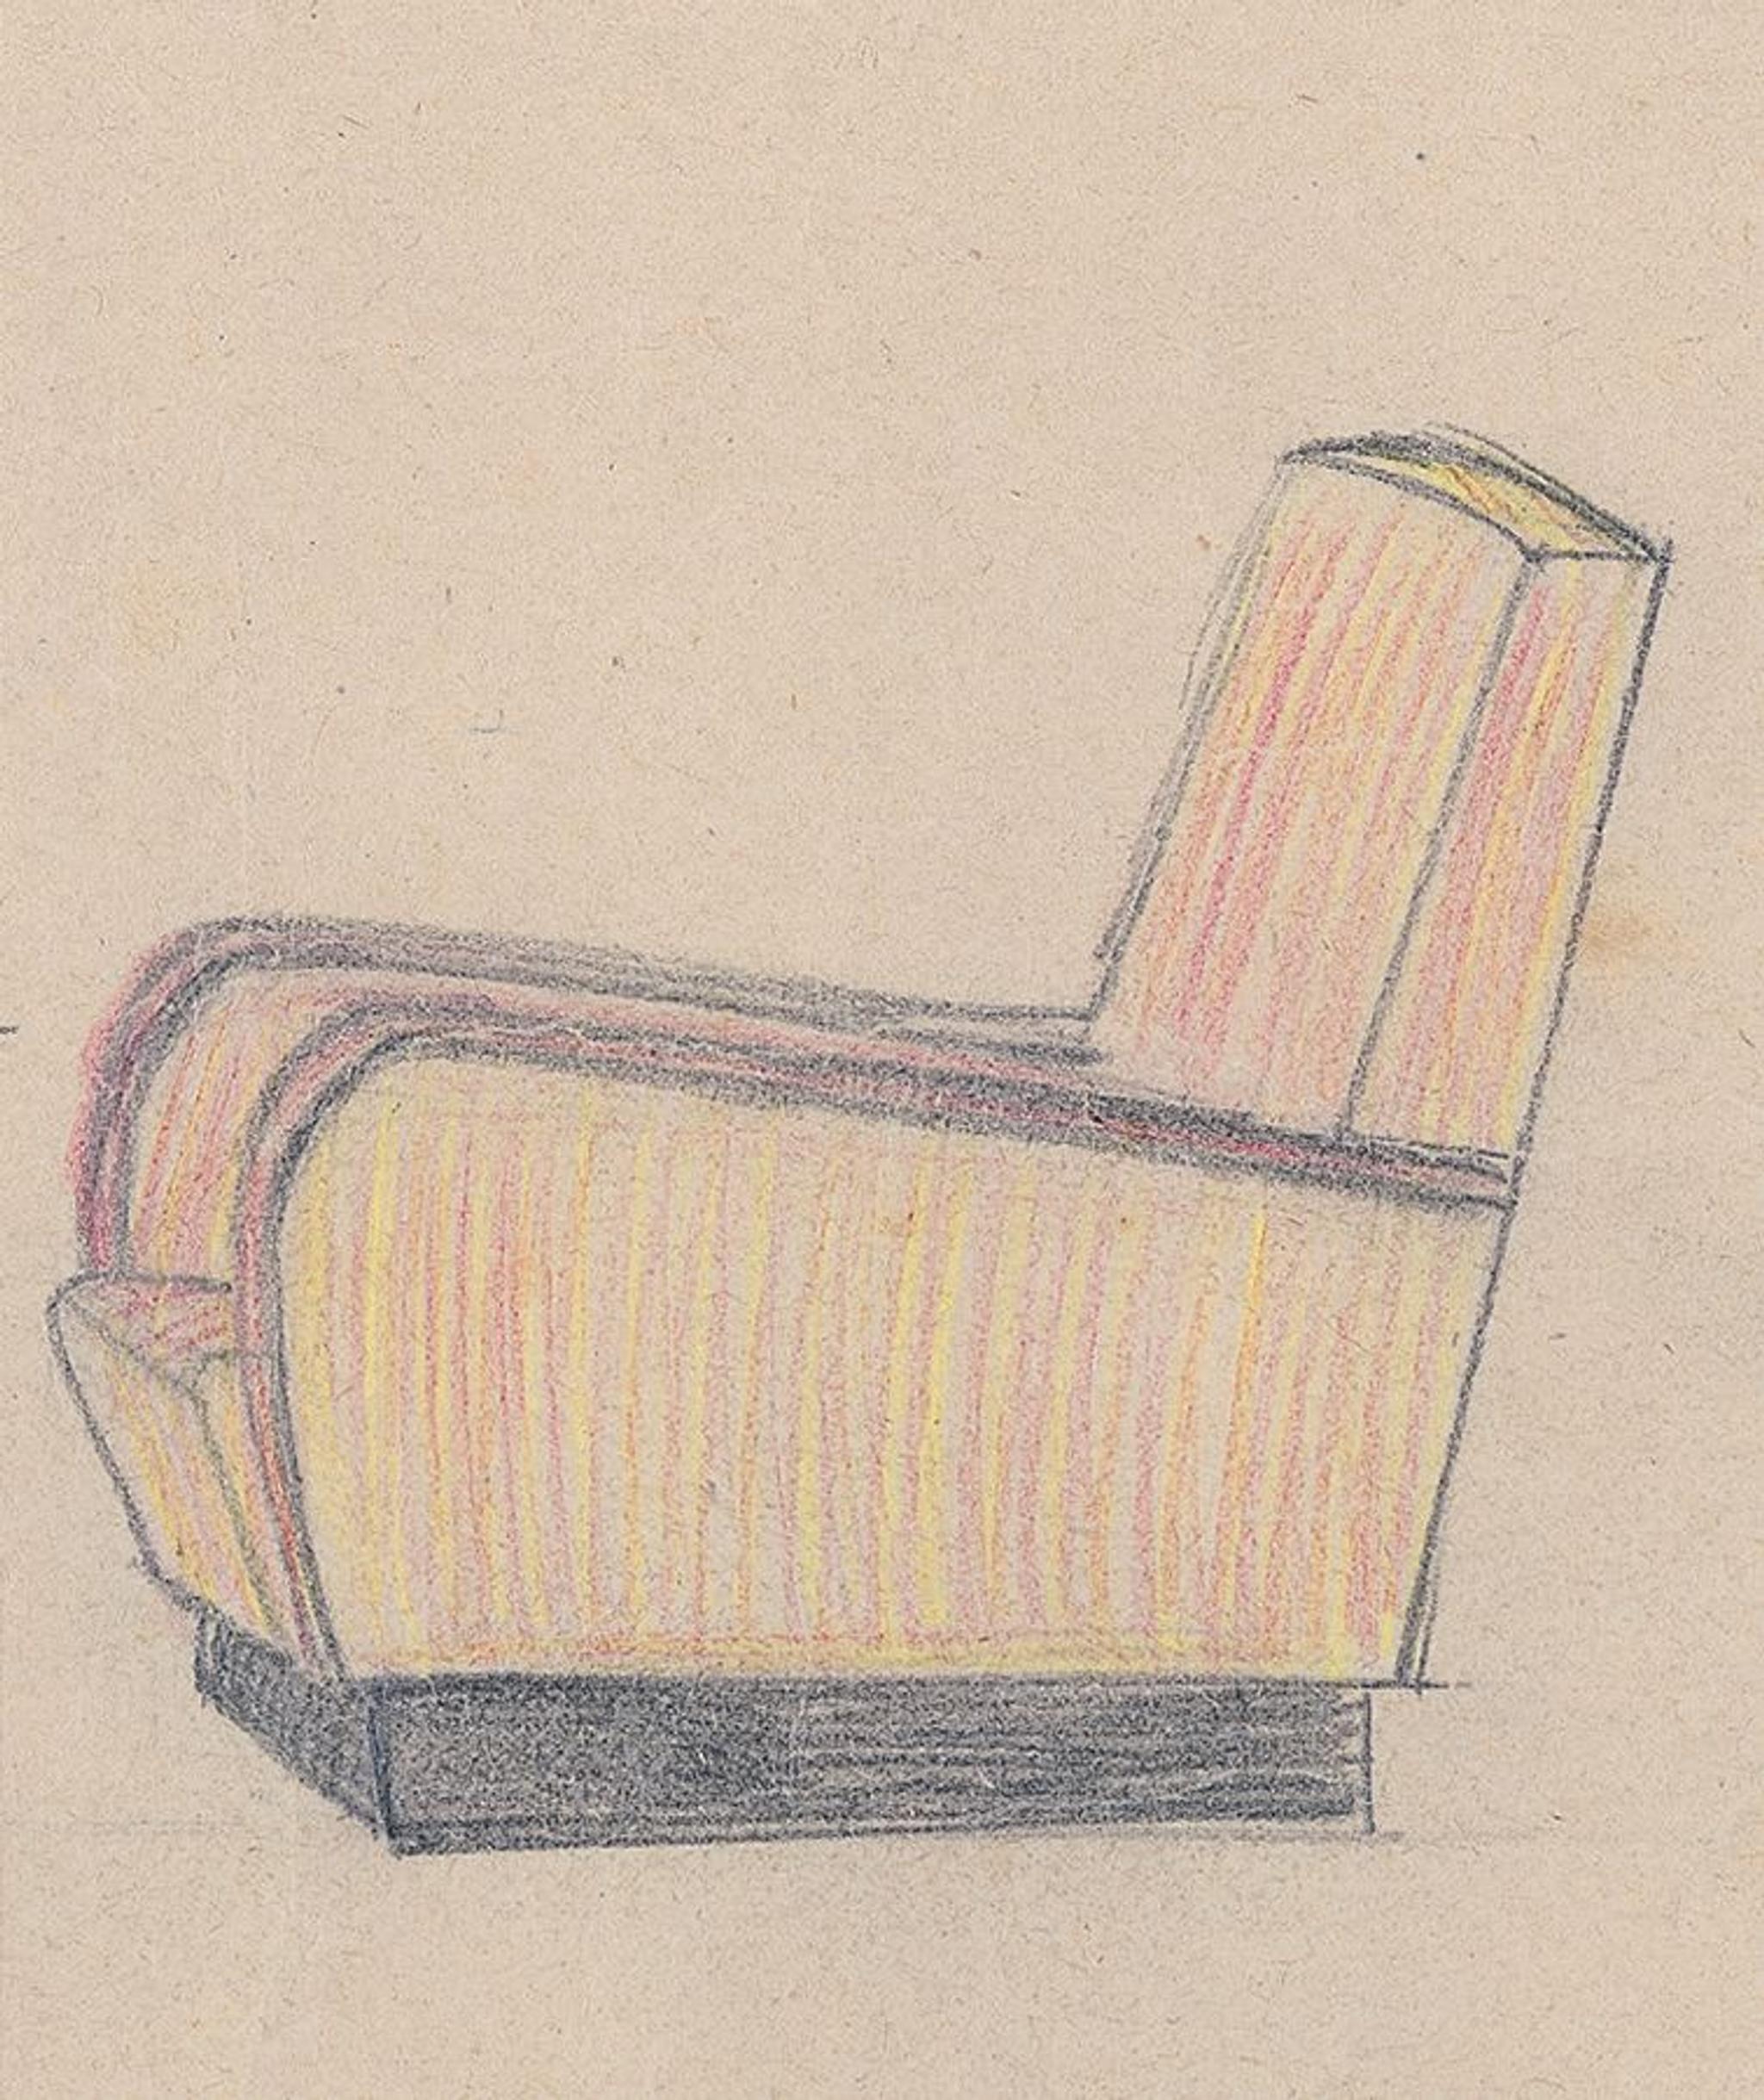 Sketch of Ventiquattro Maggio Armchair by Antonio Berdondini